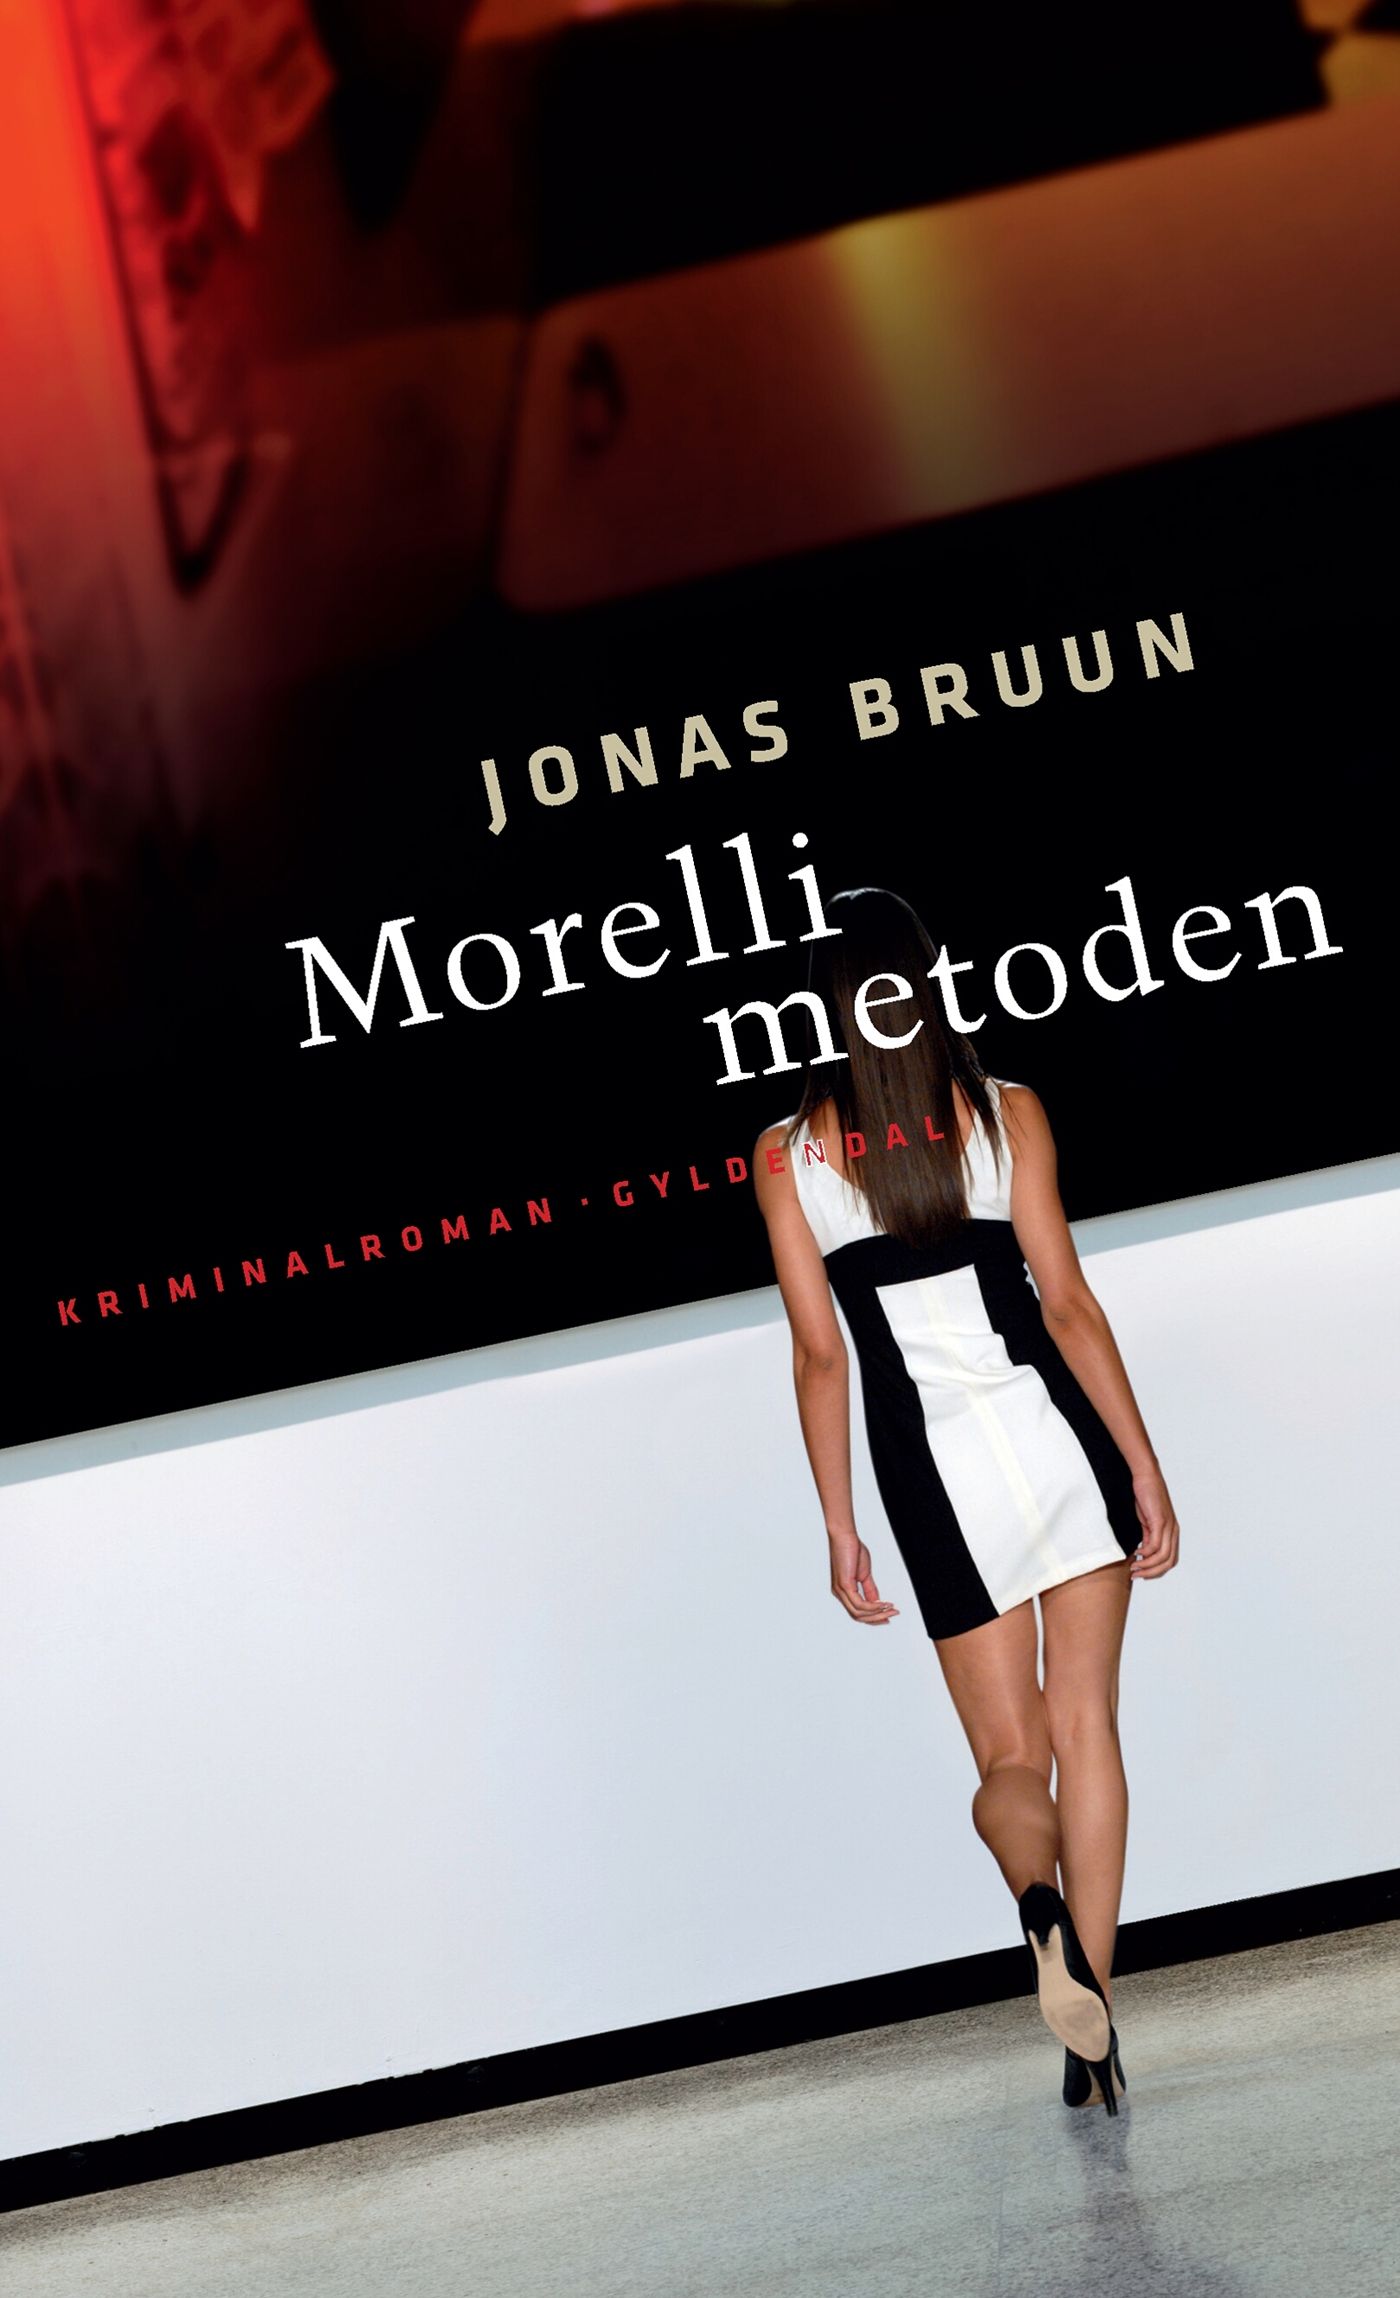 Morelli-metoden, e-bok av Jonas Bruun